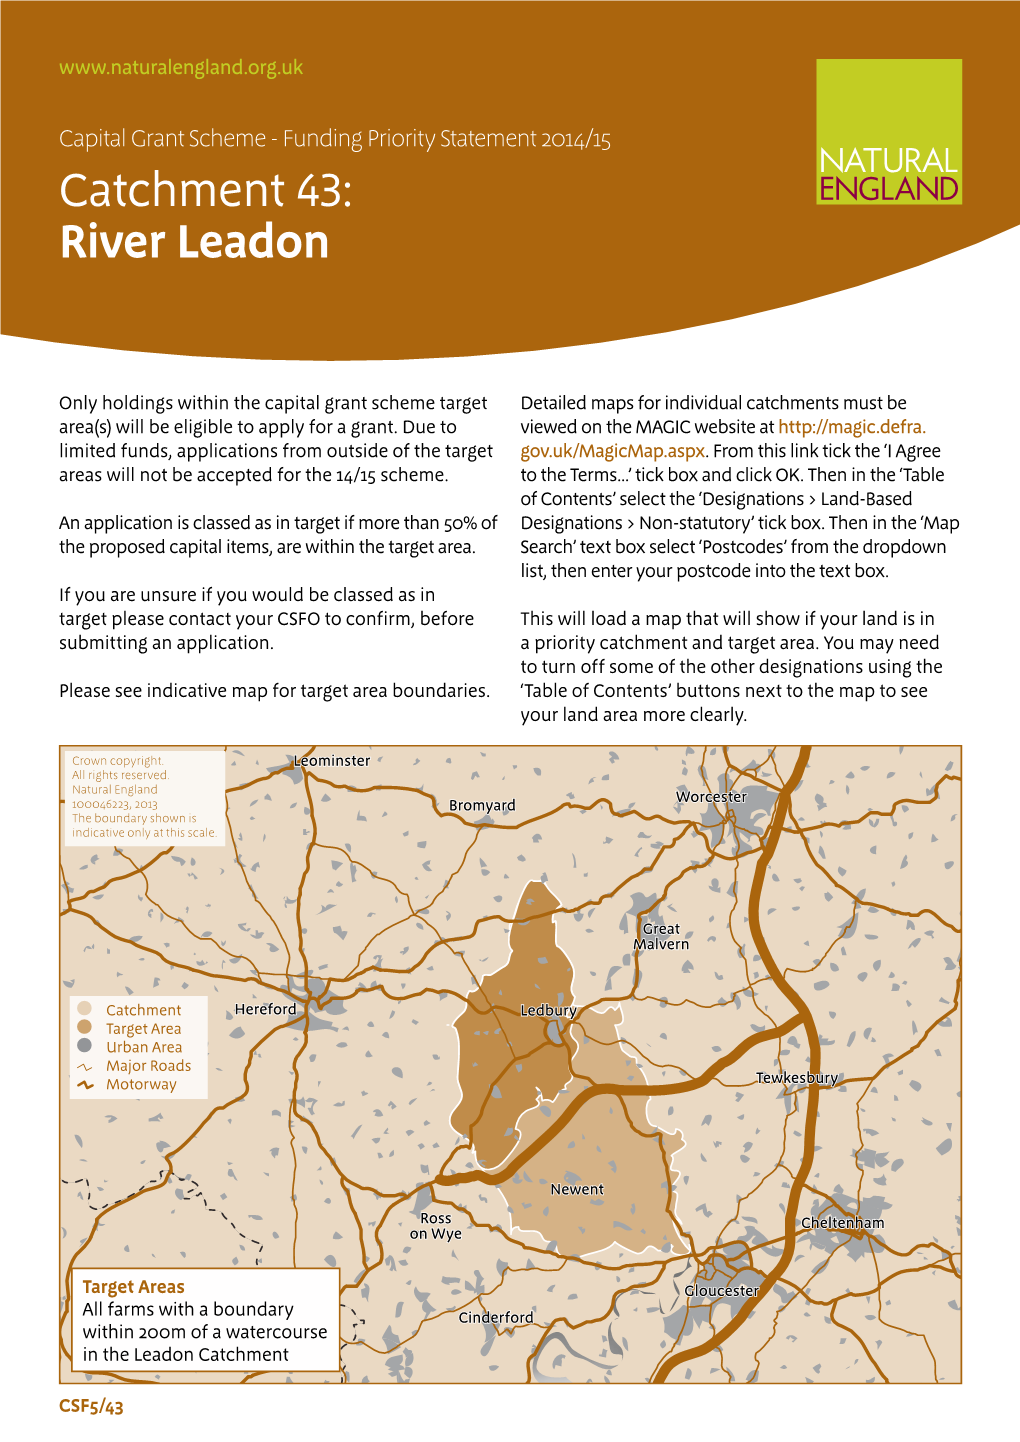 River Leadon